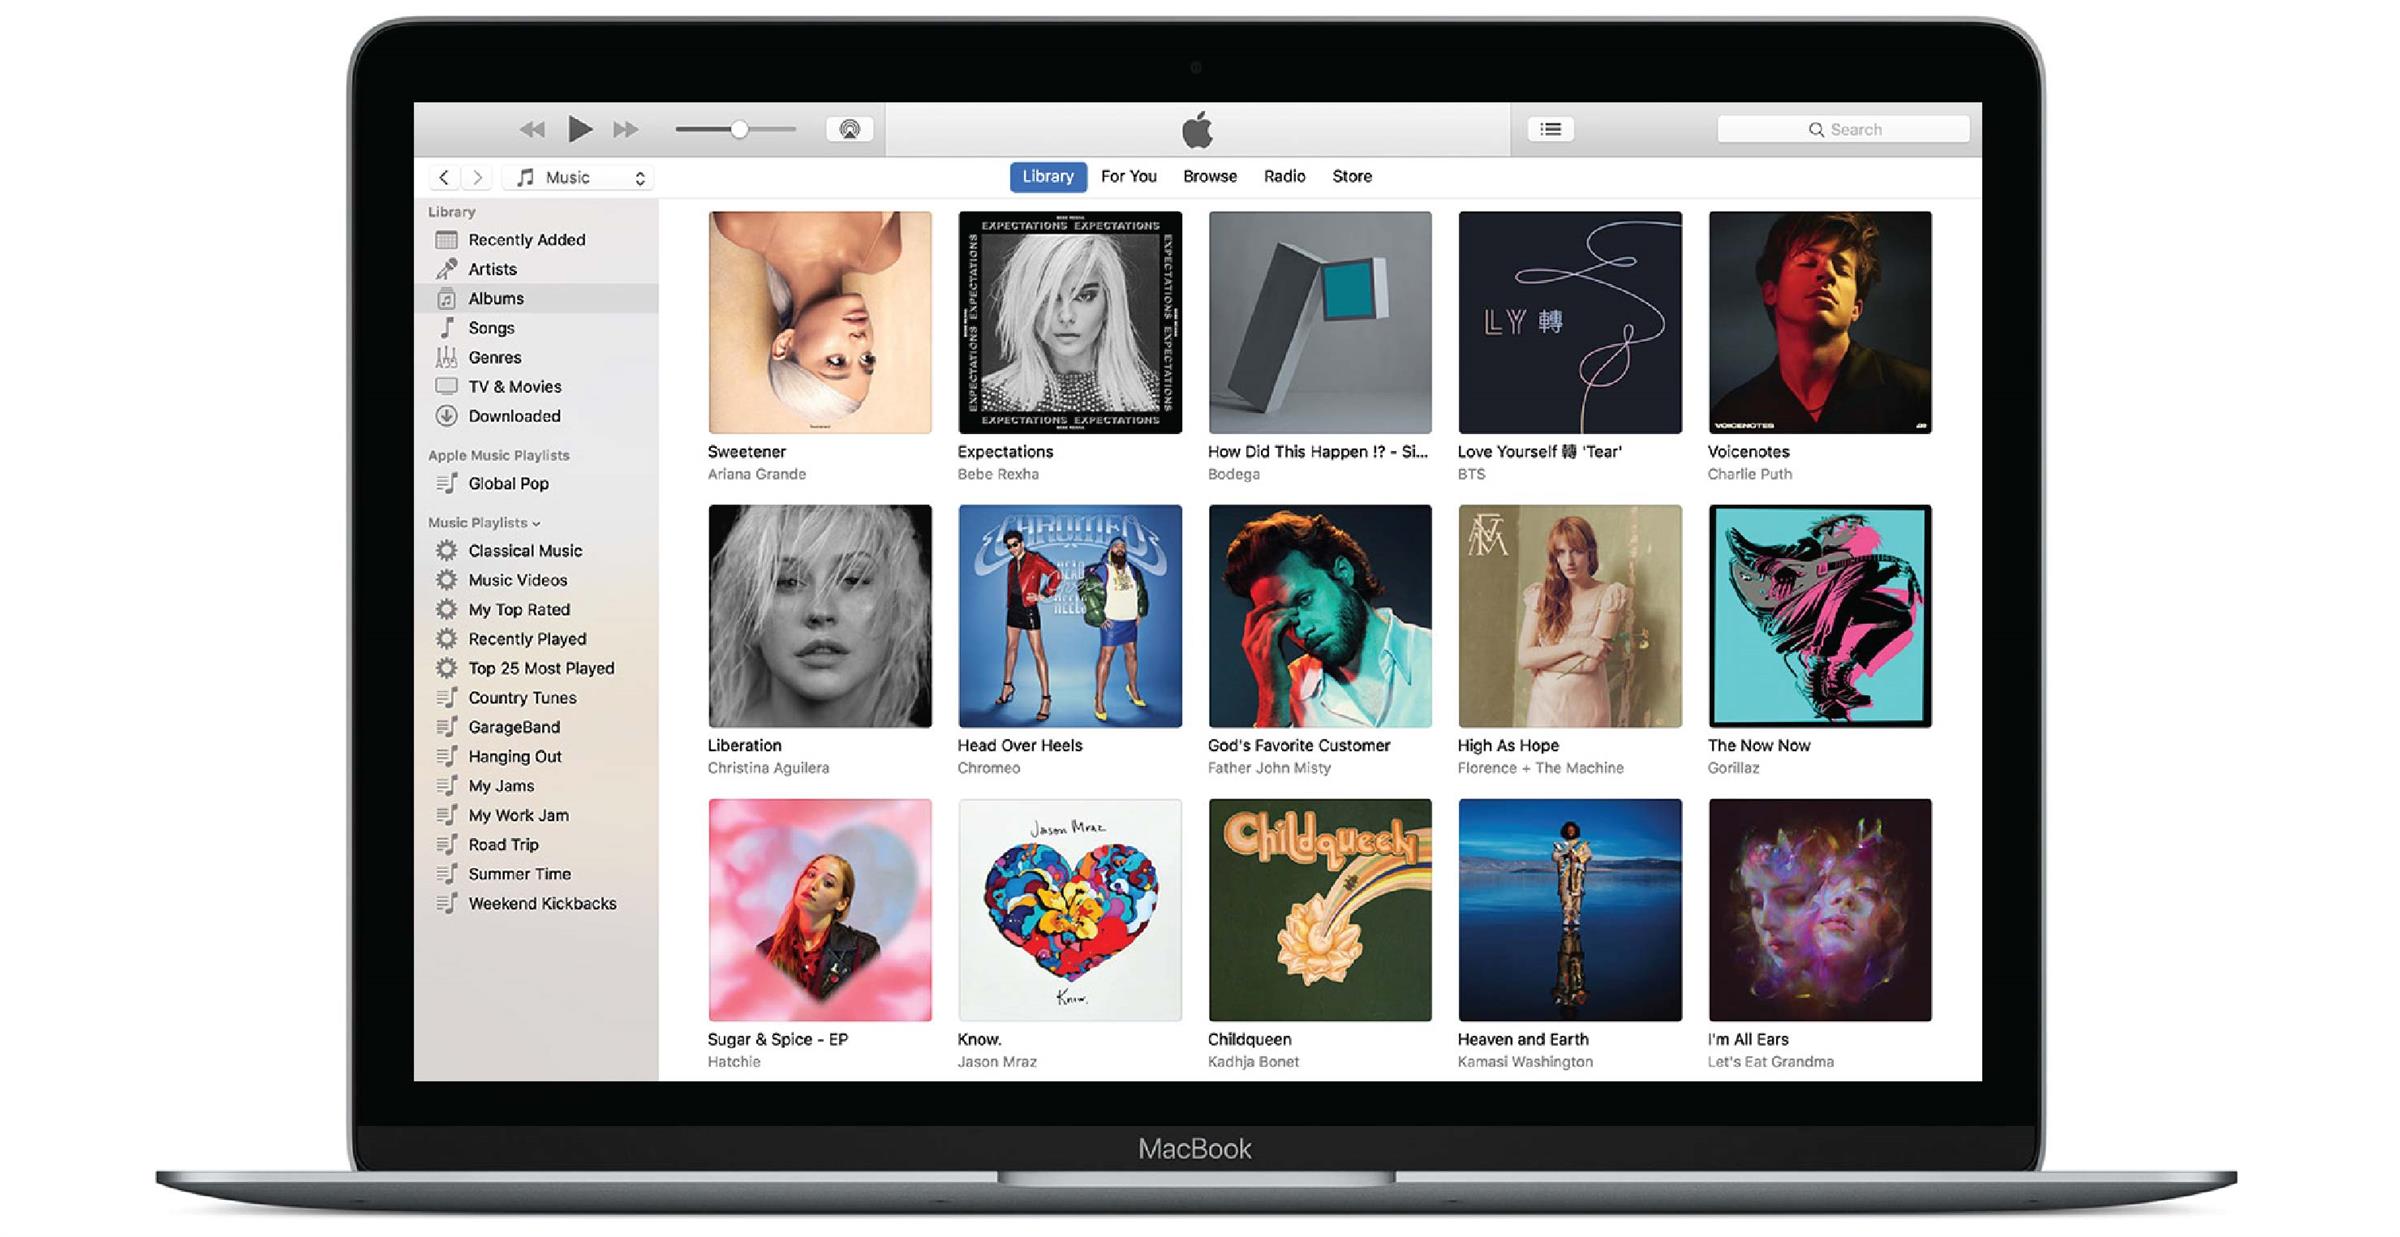 iTunes chính thức bị khai tử sau gần 2 thập kỷ hoạt động